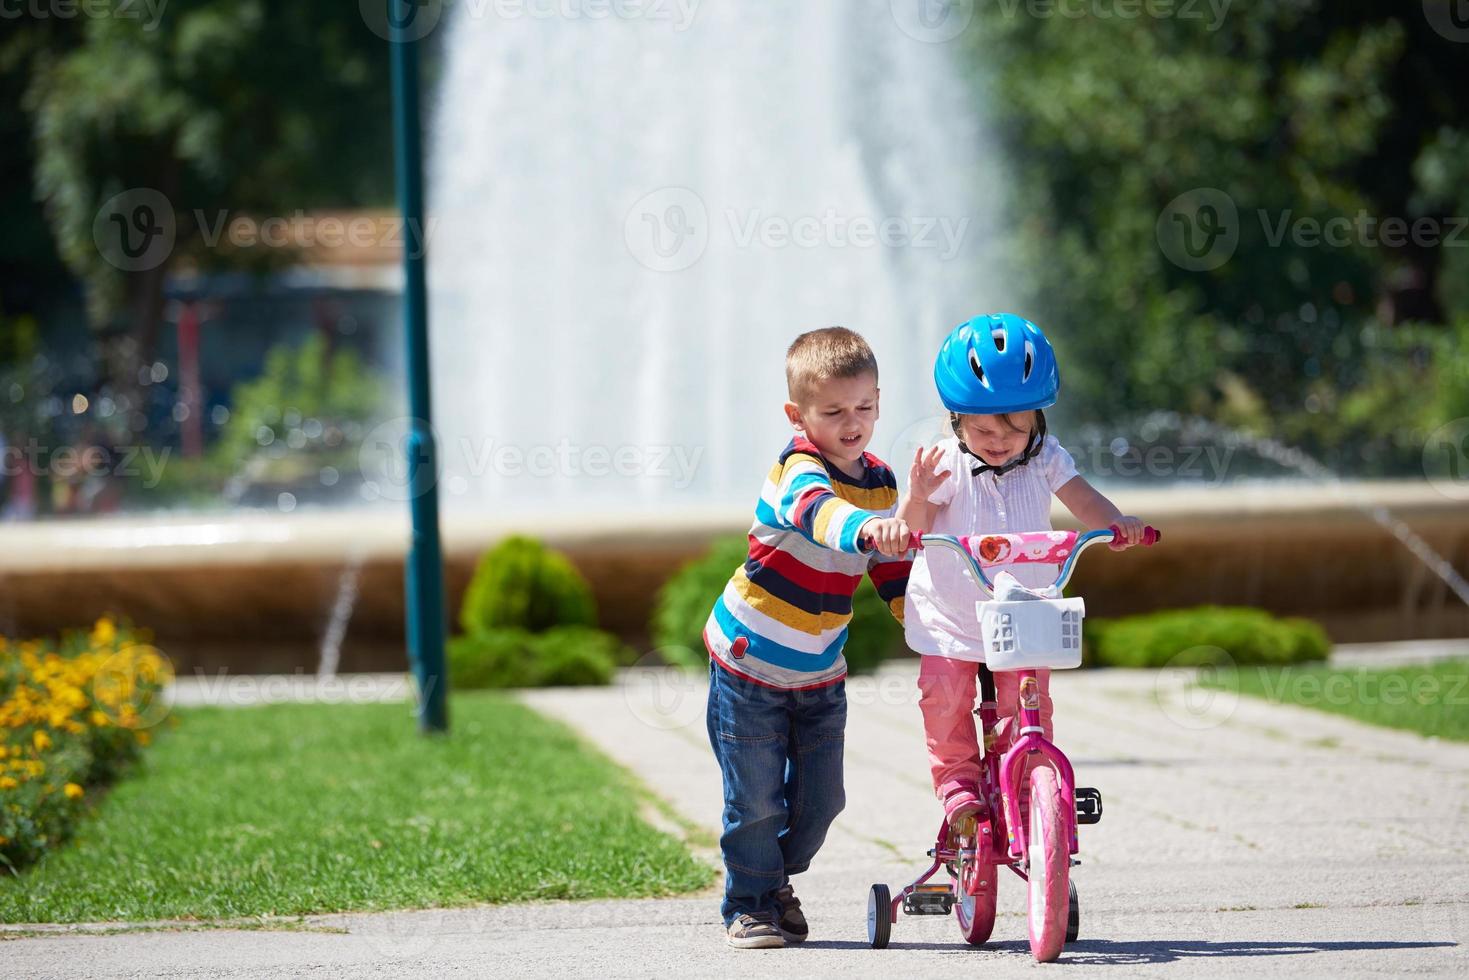 menino e menina no parque aprendendo a andar de bicicleta foto